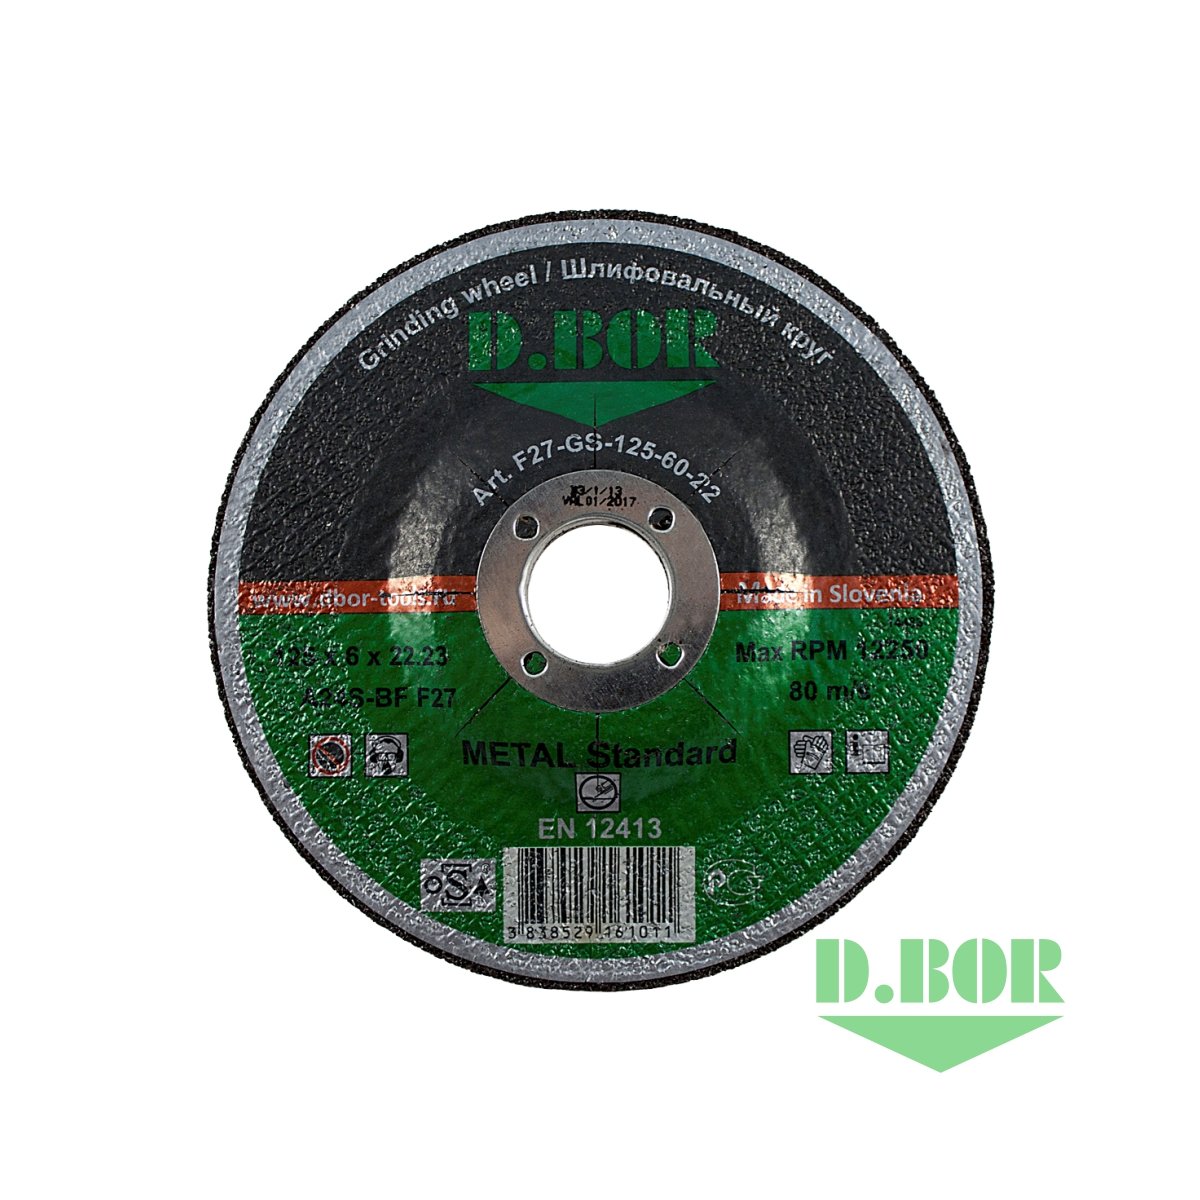 Шлифовальный диск по металлу METAL Standard A24S-BF, F27, 125x6x22,23 (арт. F27-GS-125-60-22) "D.BOR"